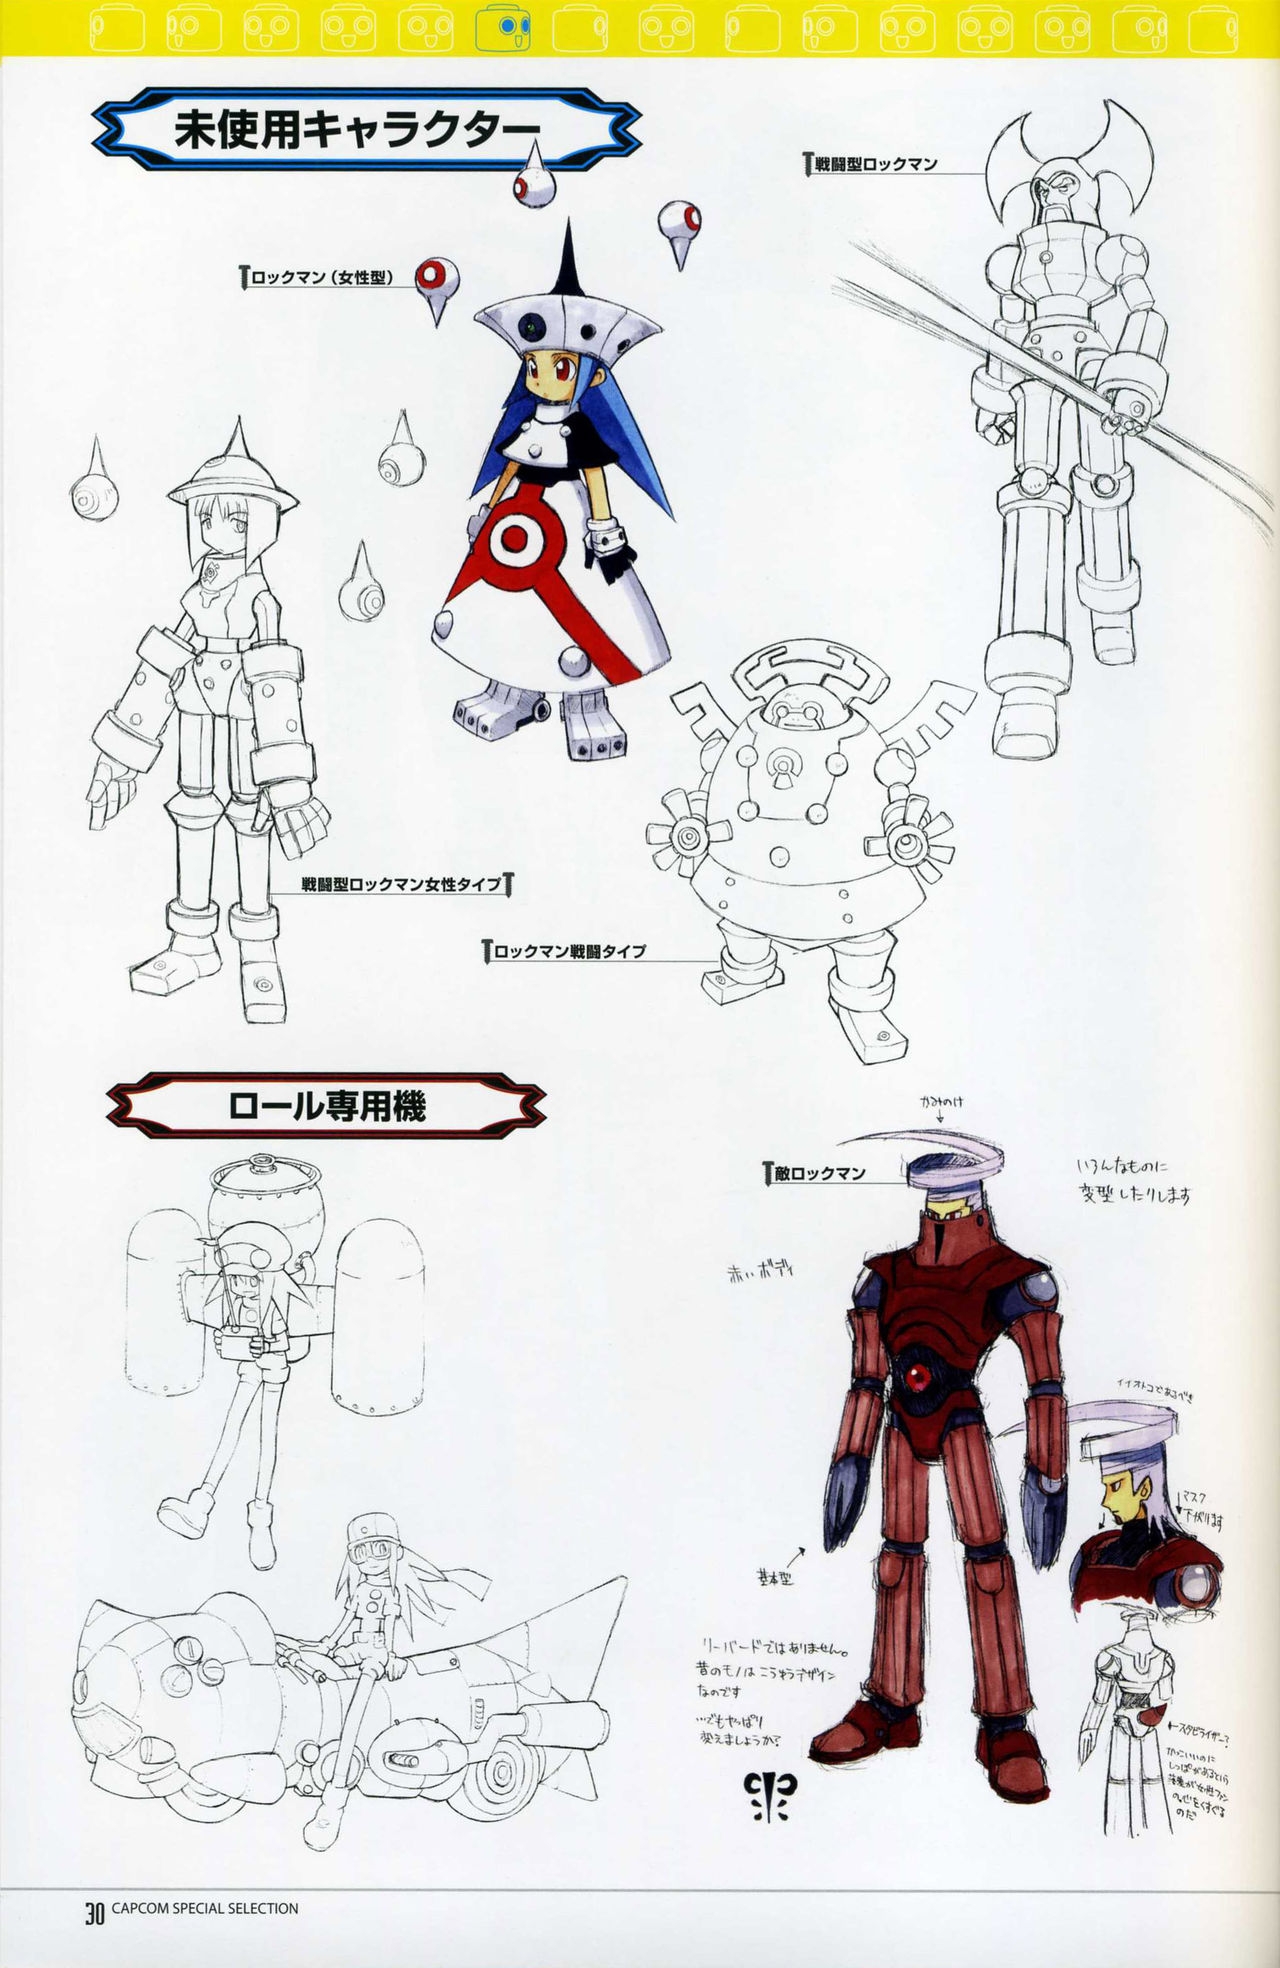 Capcom Special Selection RockMan DASH2 Artbook 31